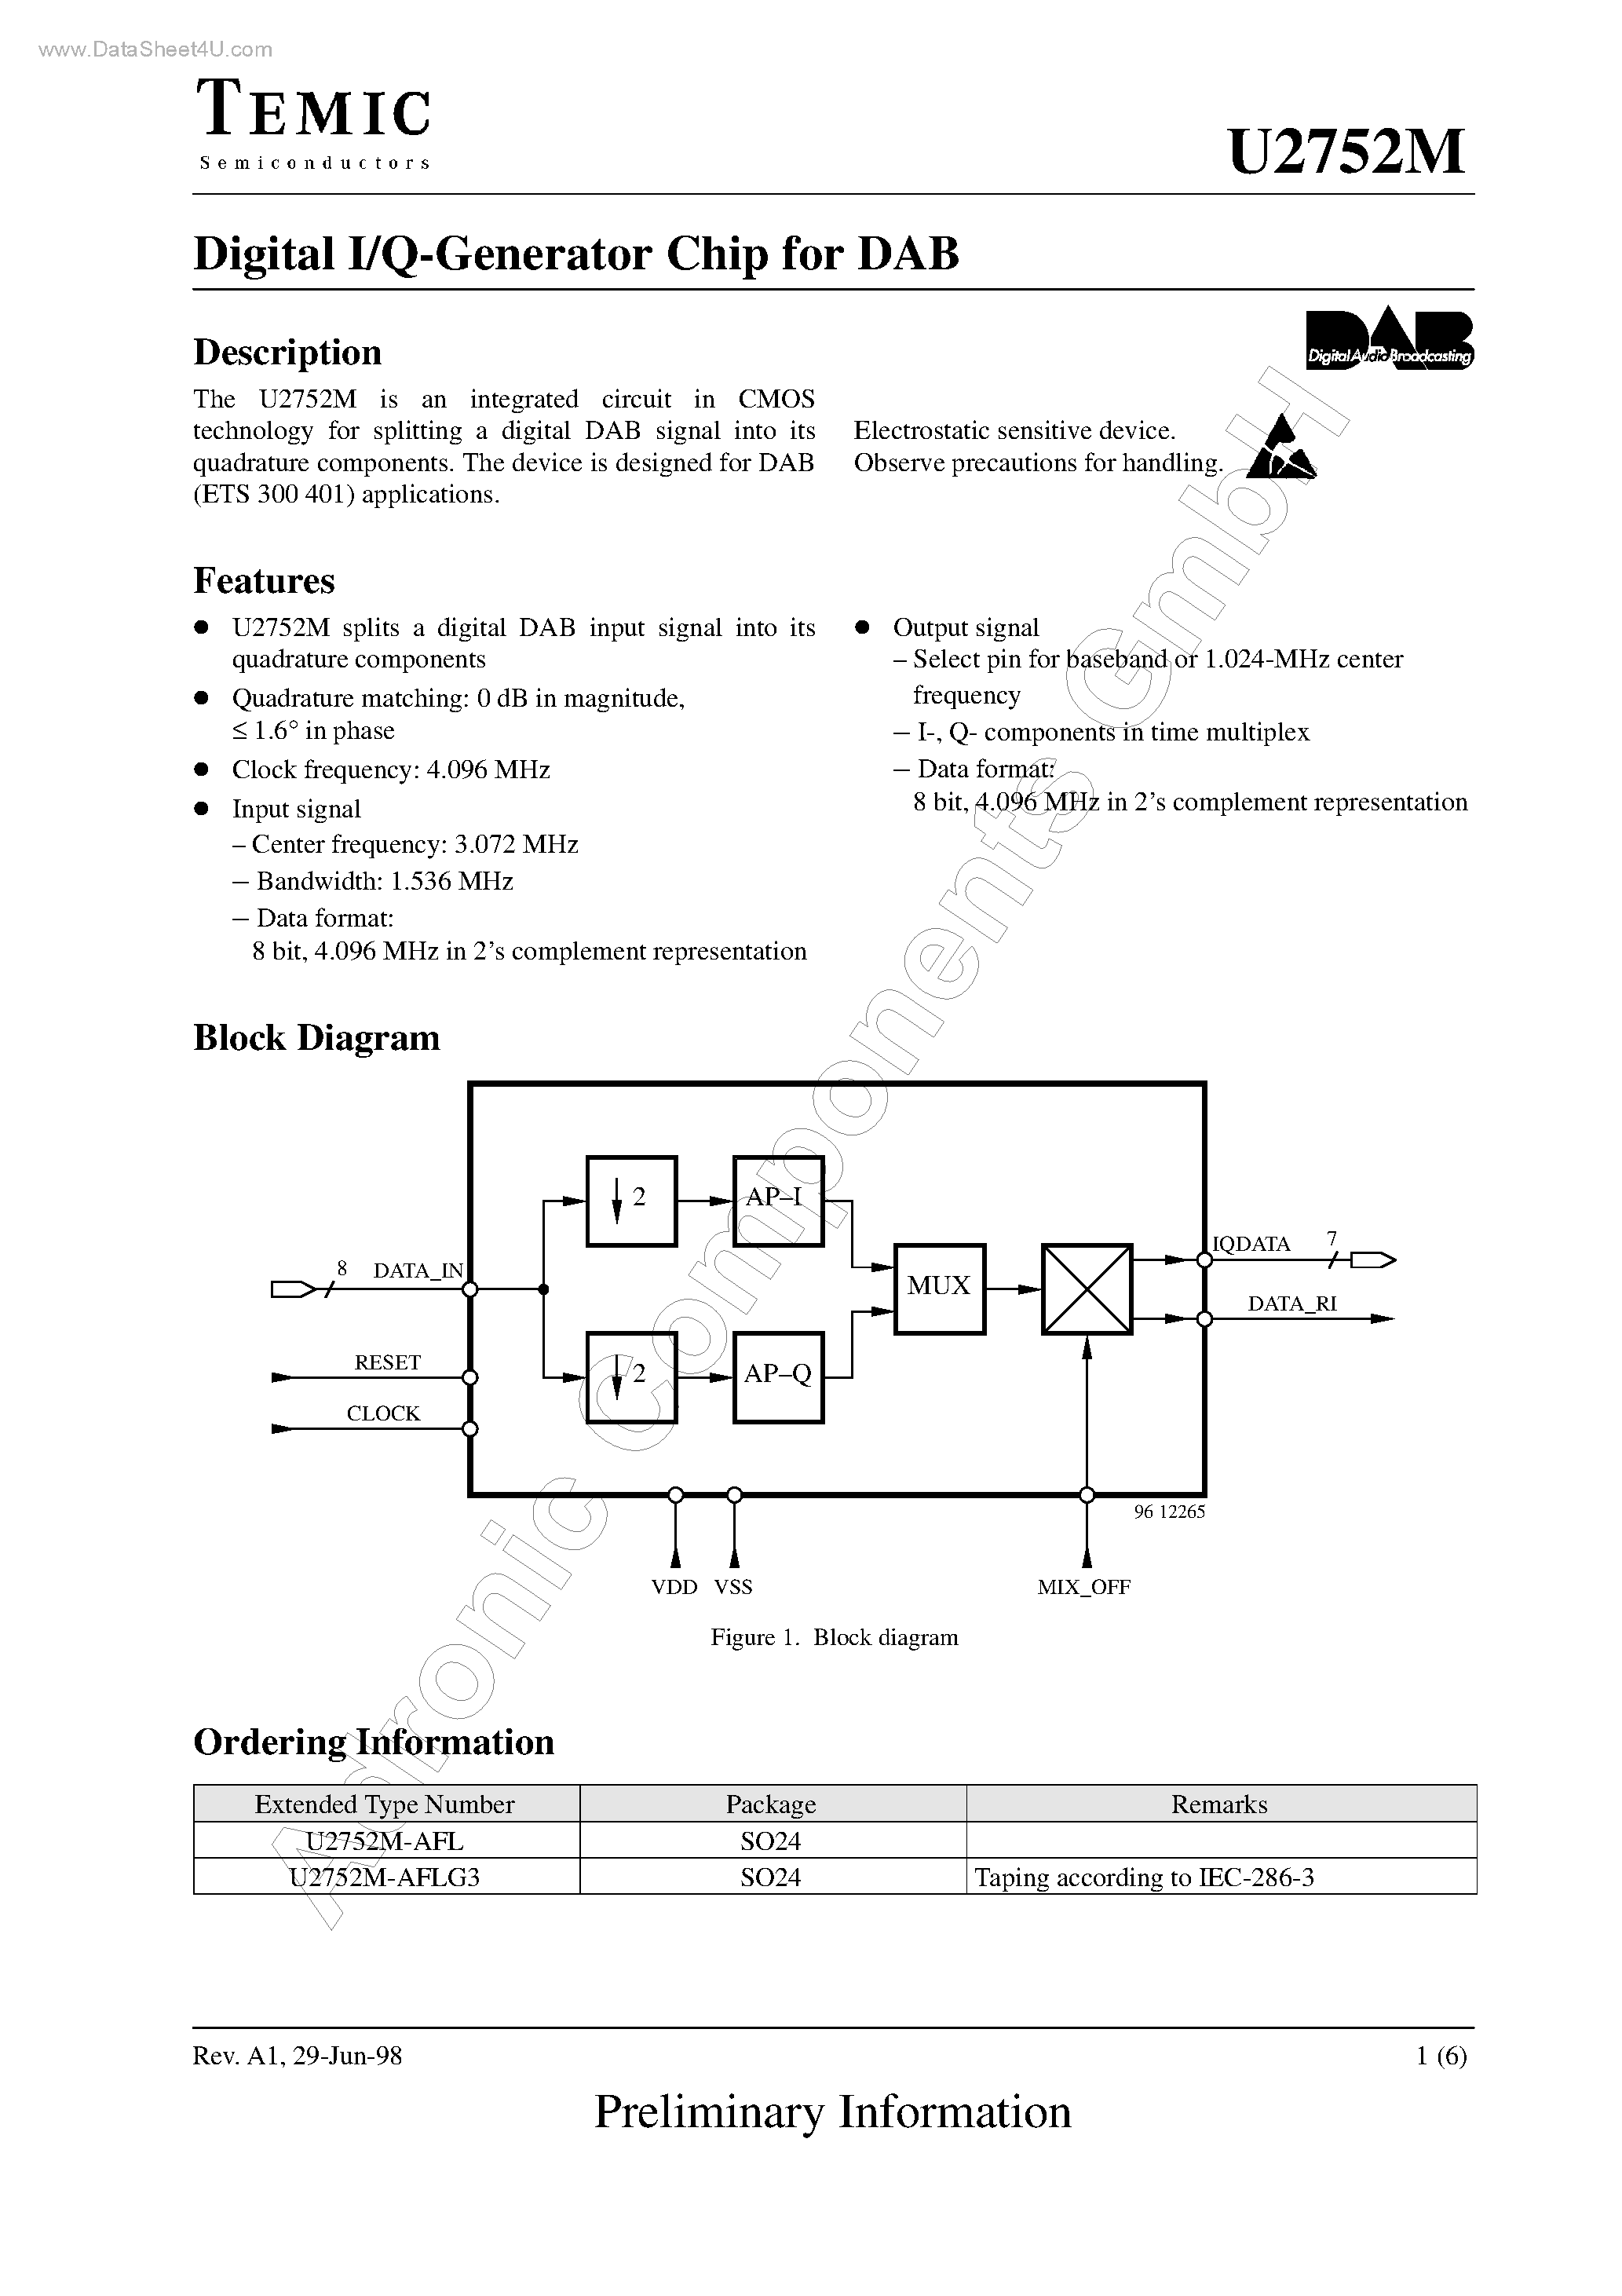 Даташит U2752M - Digital I/Q-Generator Chip страница 1